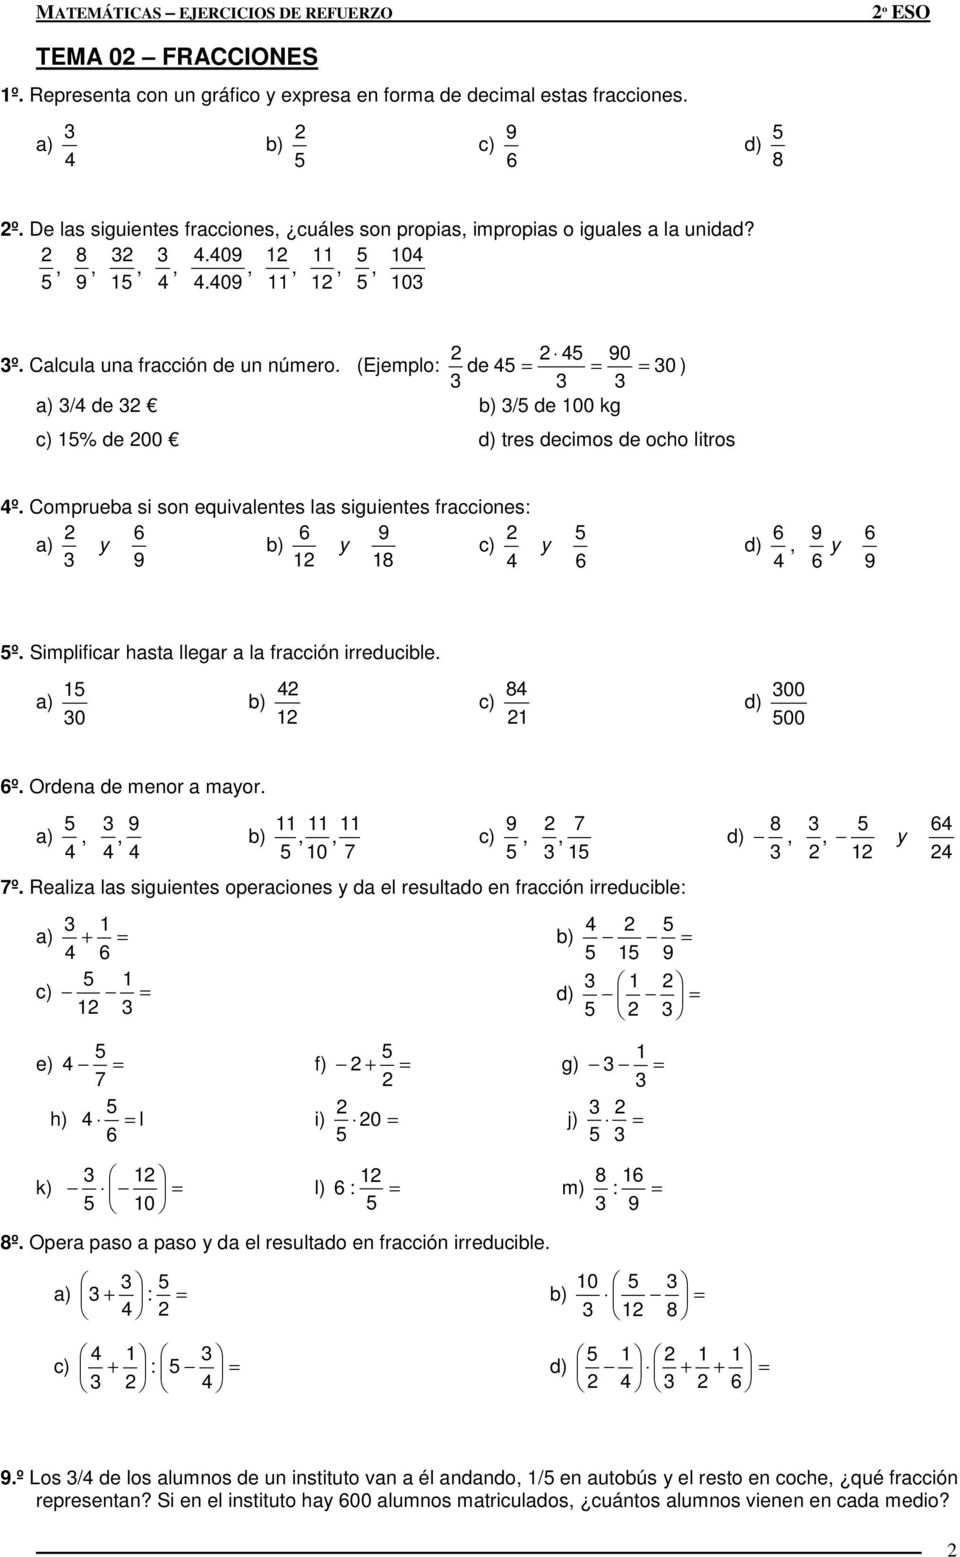 Simplificar hasta llegar a la fracción irreducible. 0 8 00 d) 00 º. Ordena de menor a maor.,,,, 0,, d) 8,, º.